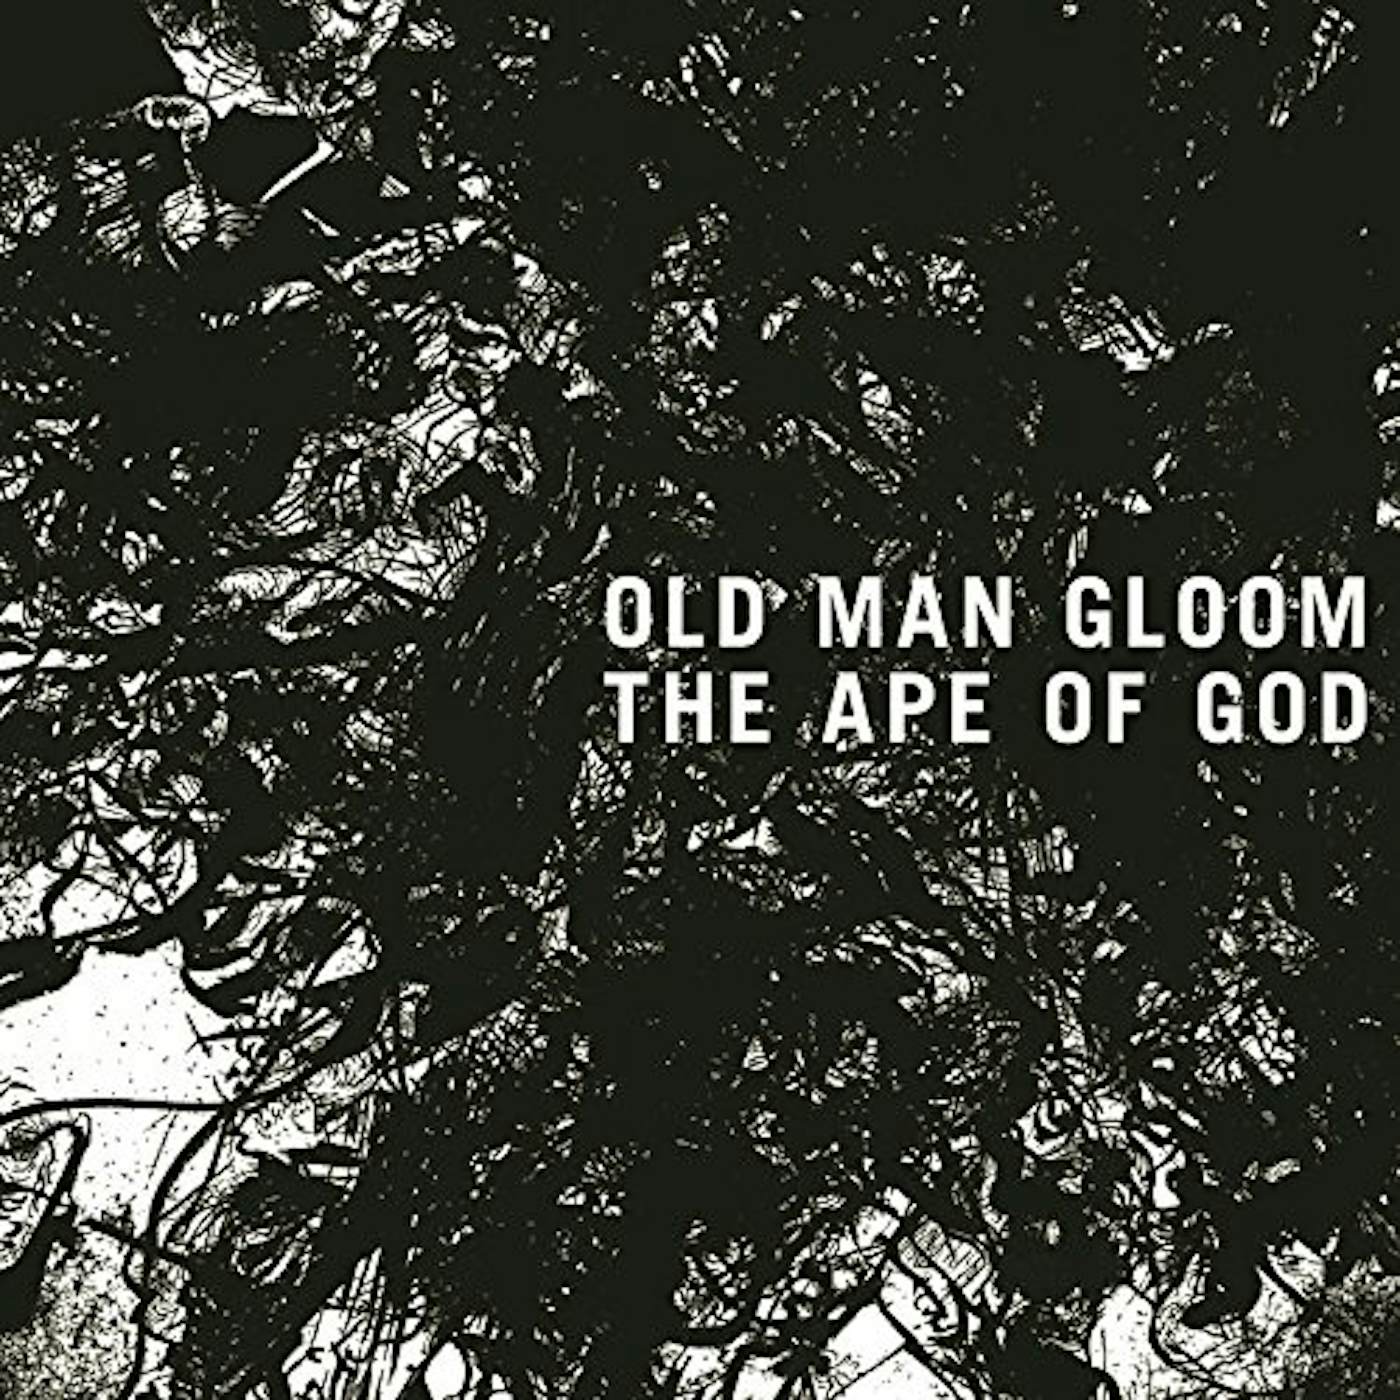 Old Man Gloom APE OF GOD I CD